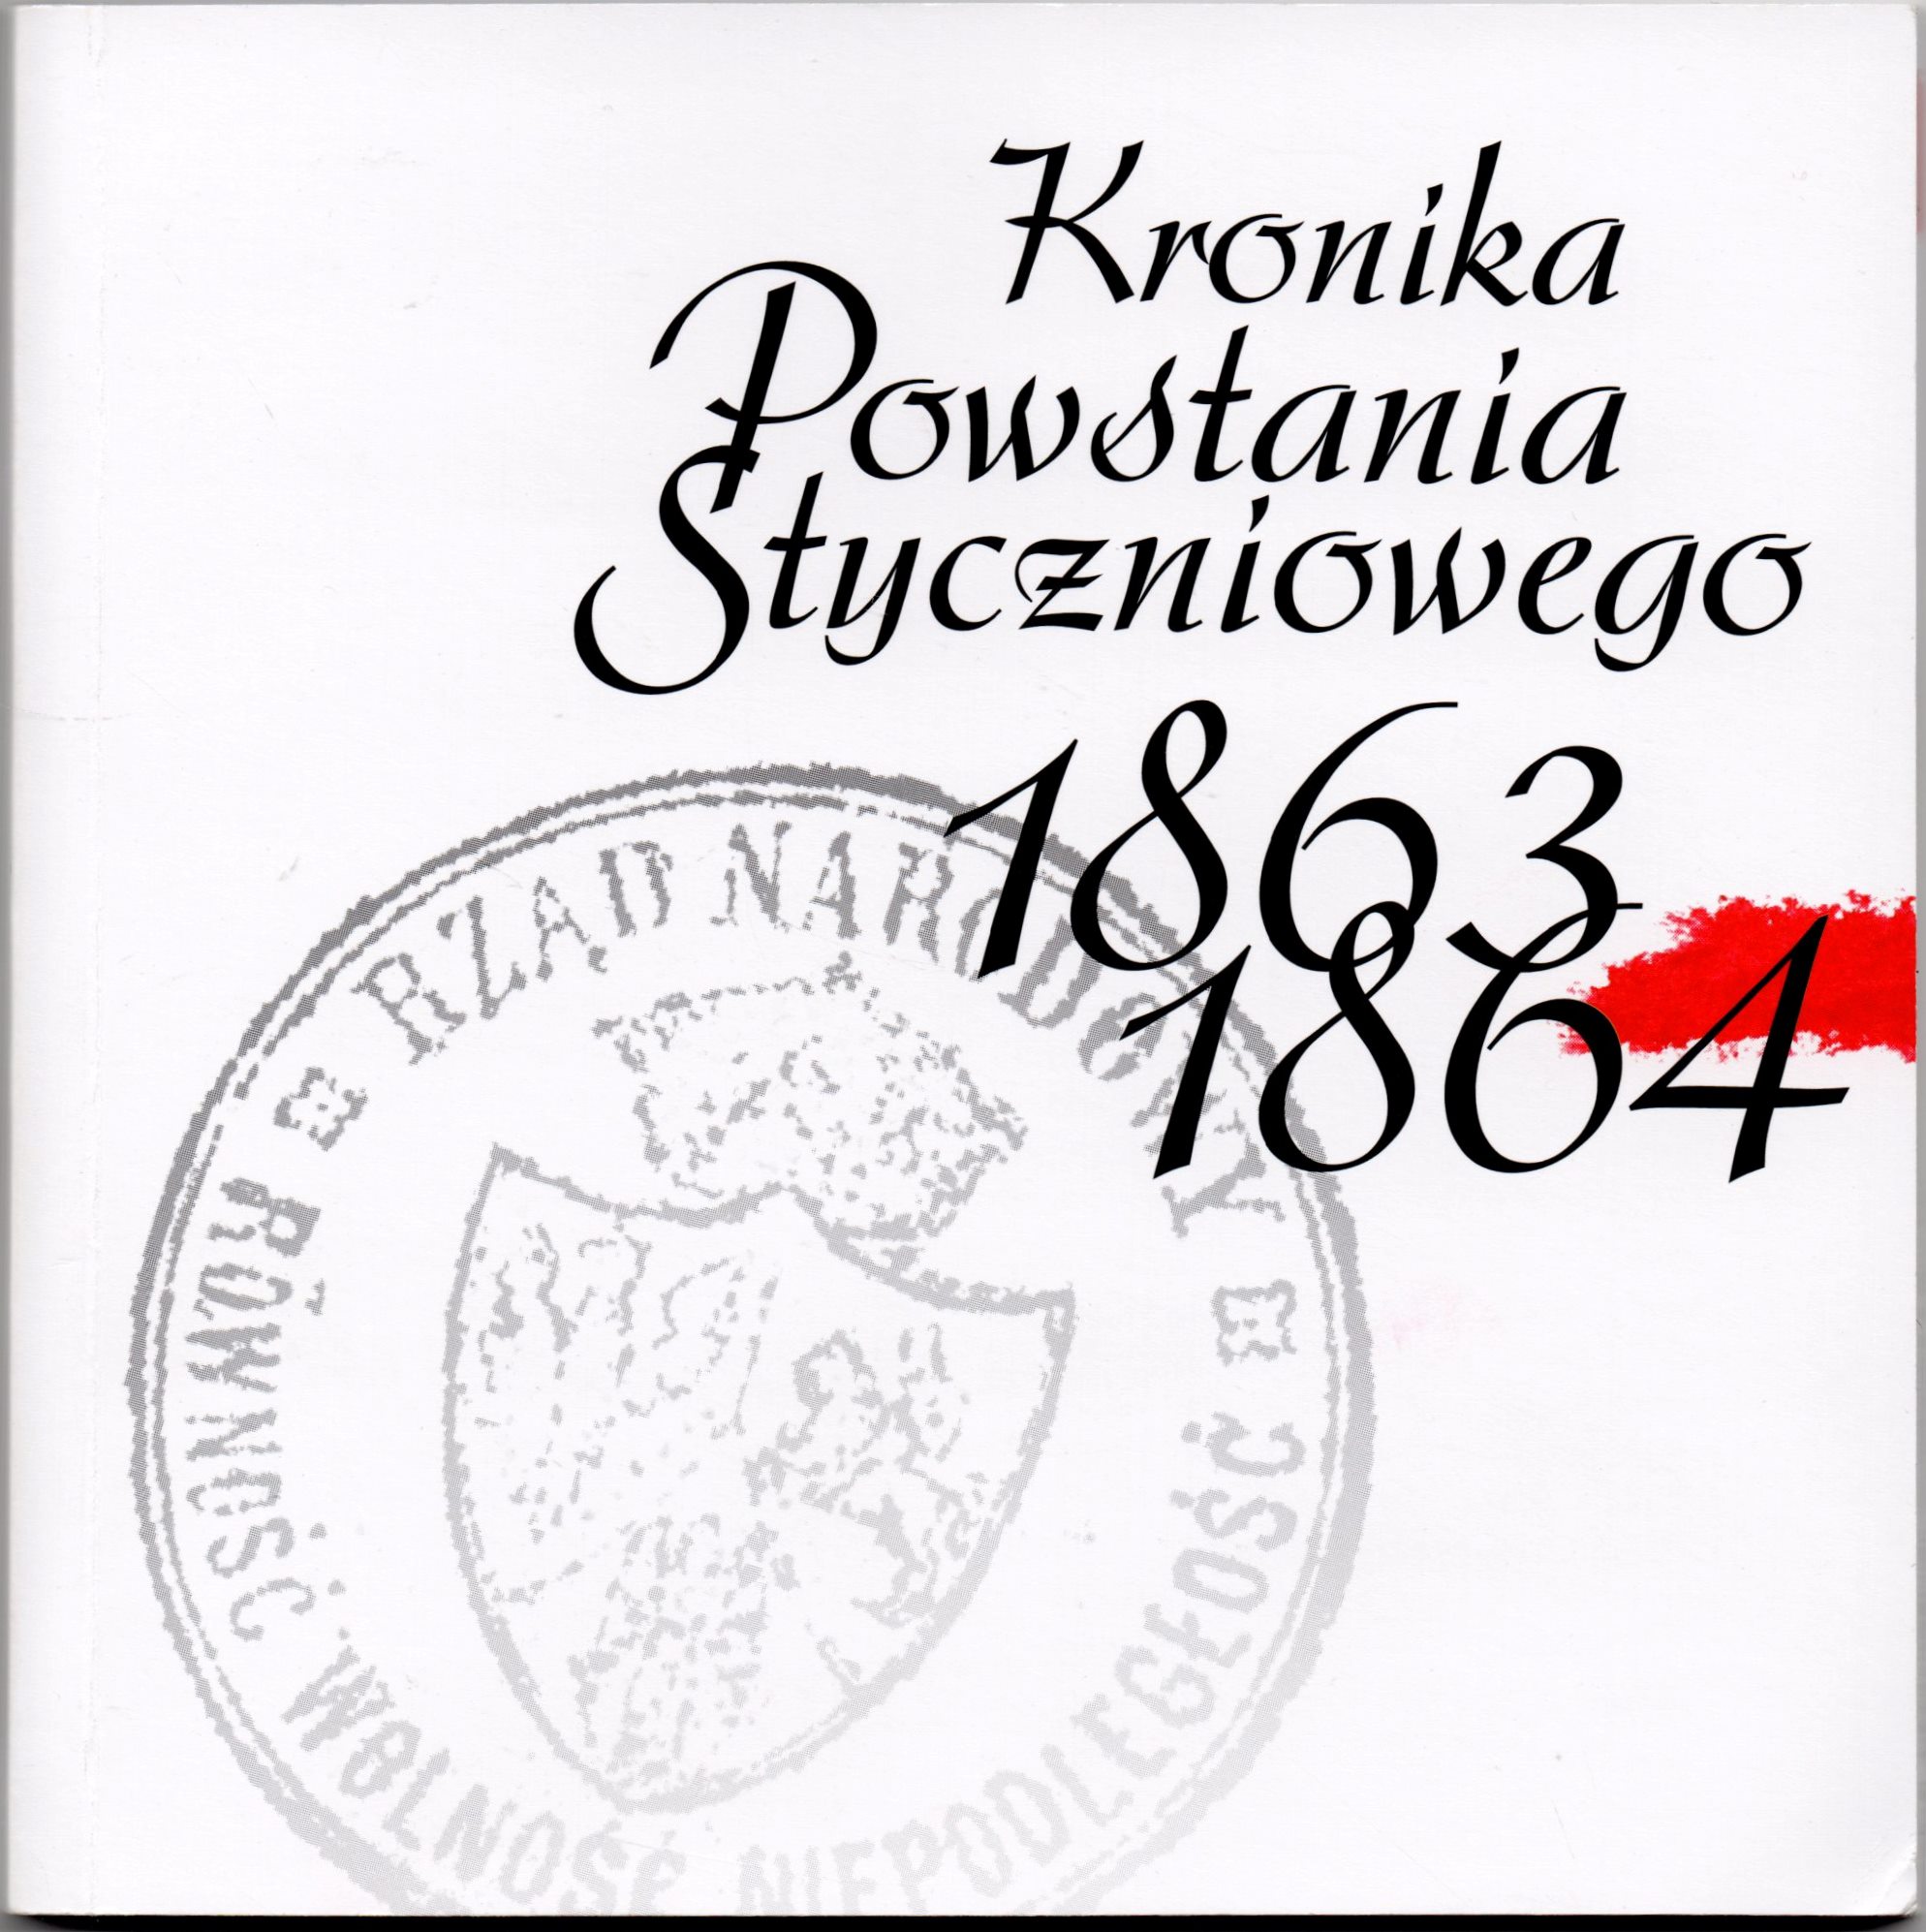 Комплект дисків з буклетом "Kronika Powstania Styczniowego 1863-1864 / Літопис Січневого повстання 1863-1864 рр.". Буклет